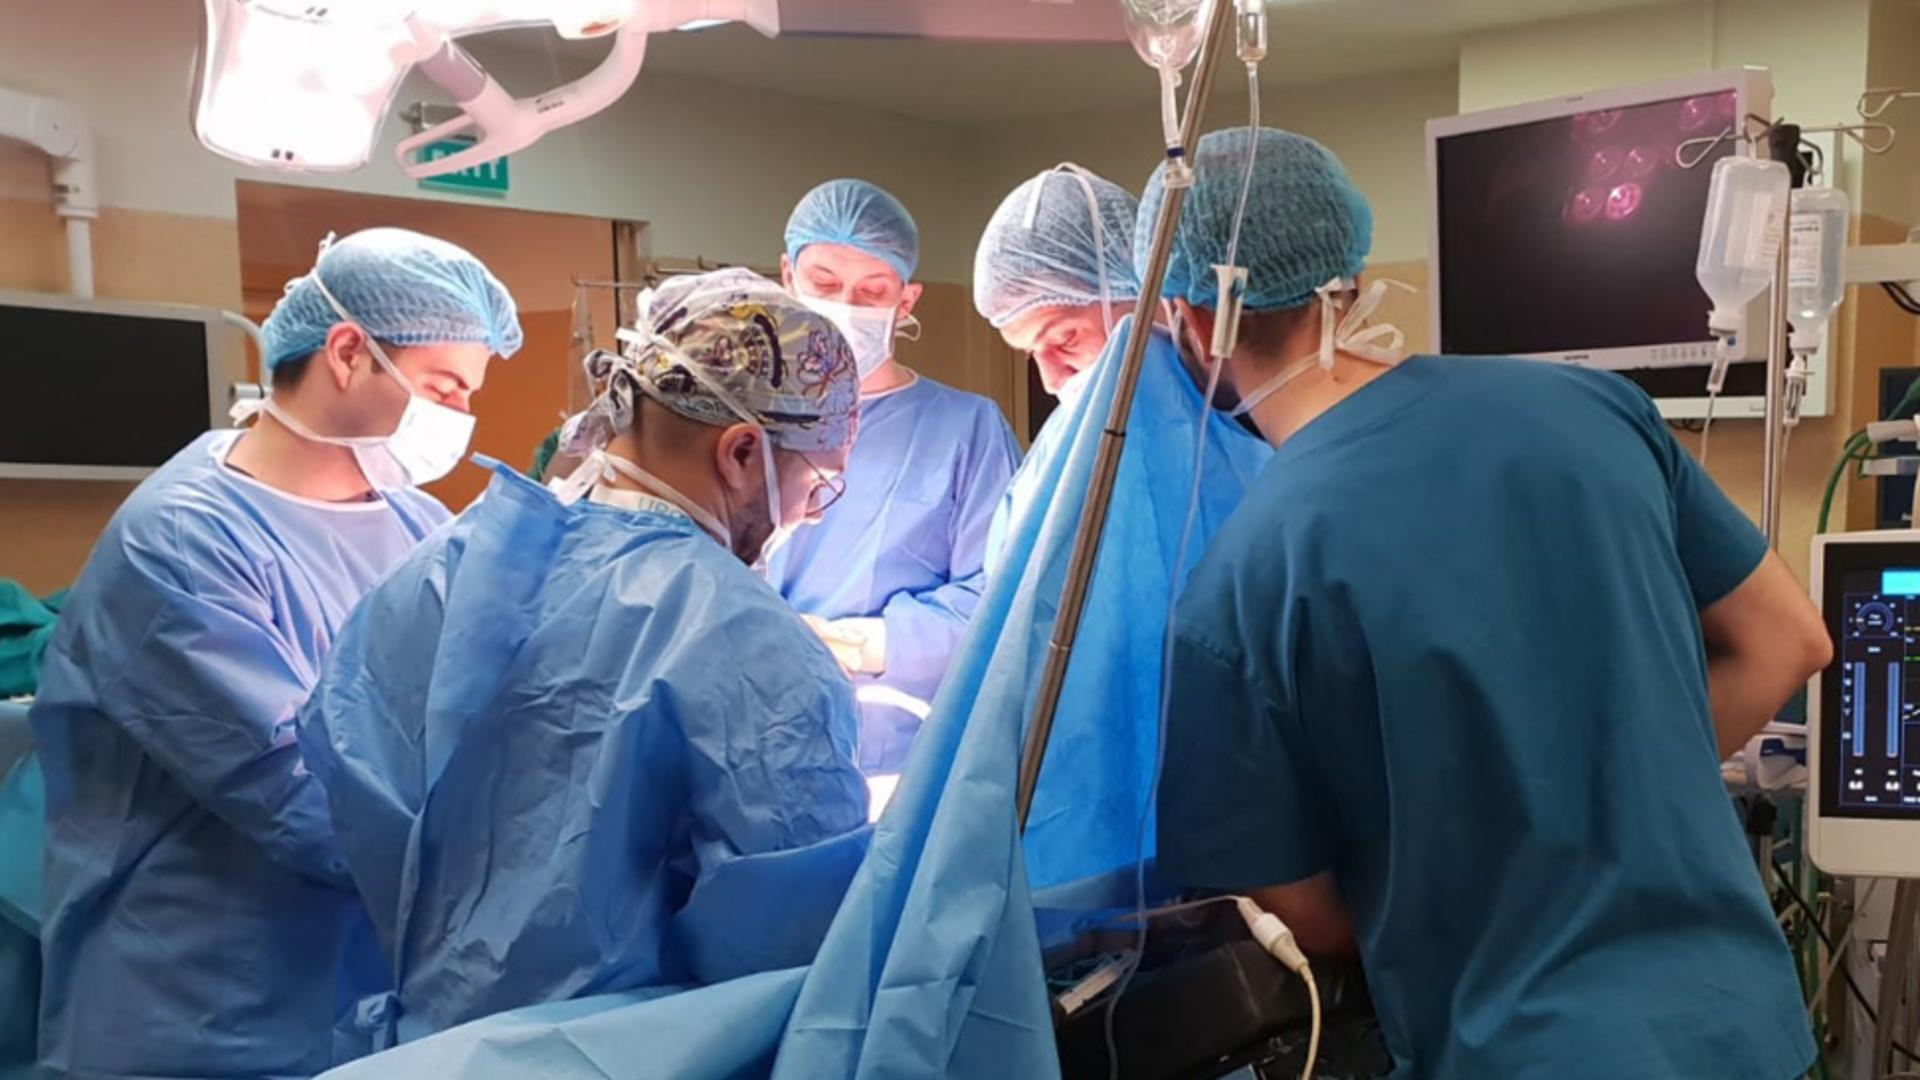 O nouă șansă la viață. Rinichii unui bărbat mort în urma unui atac cerebral au salvat viața a doi bolnavi aflați în dializă, la Cluj